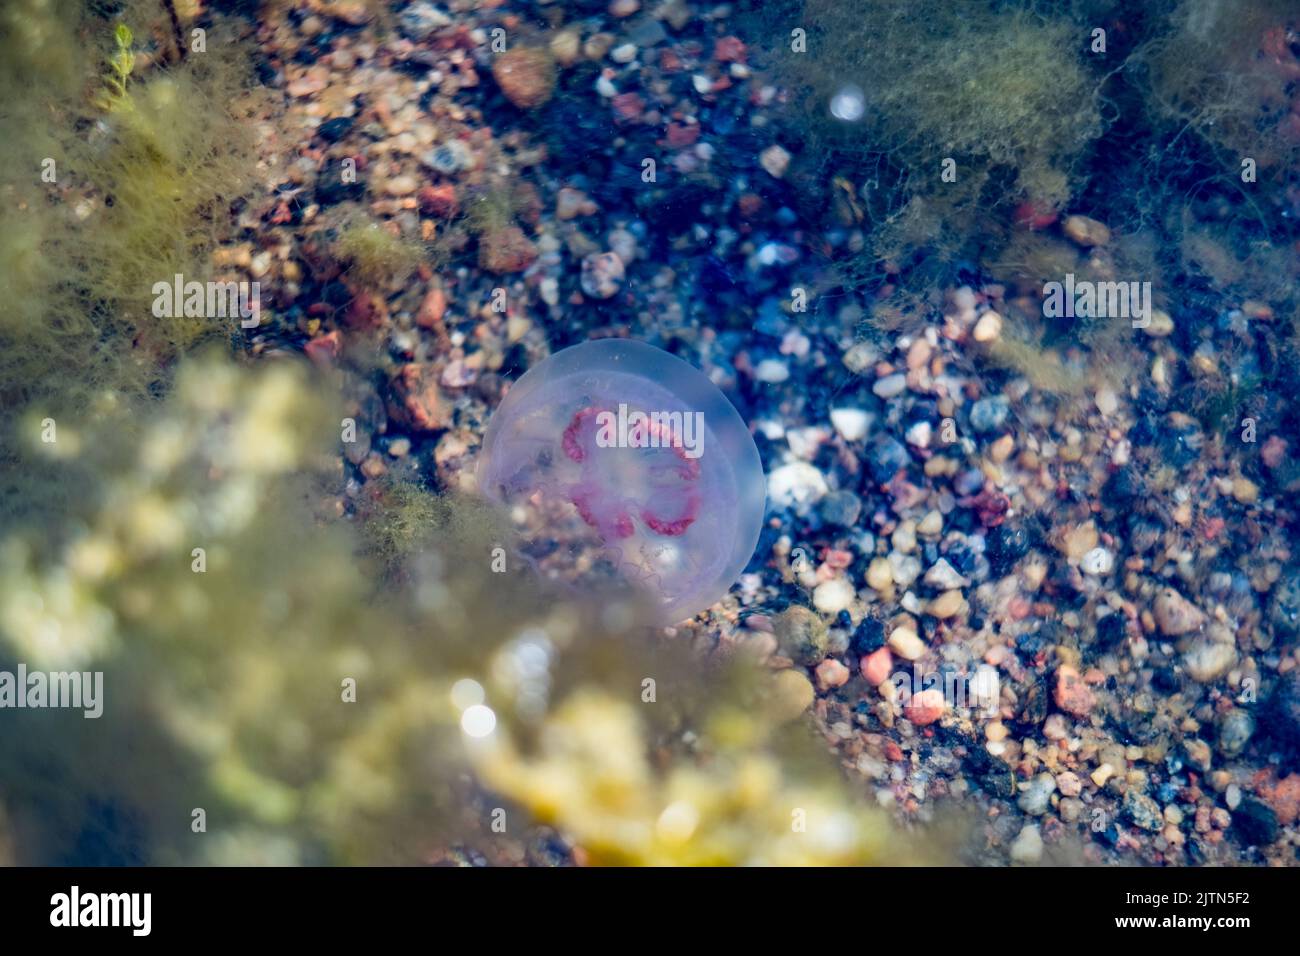 Meduse nuotare nel Mar Baltico durante la calda giornata estiva. Sparato attraverso acqua. Foto Stock